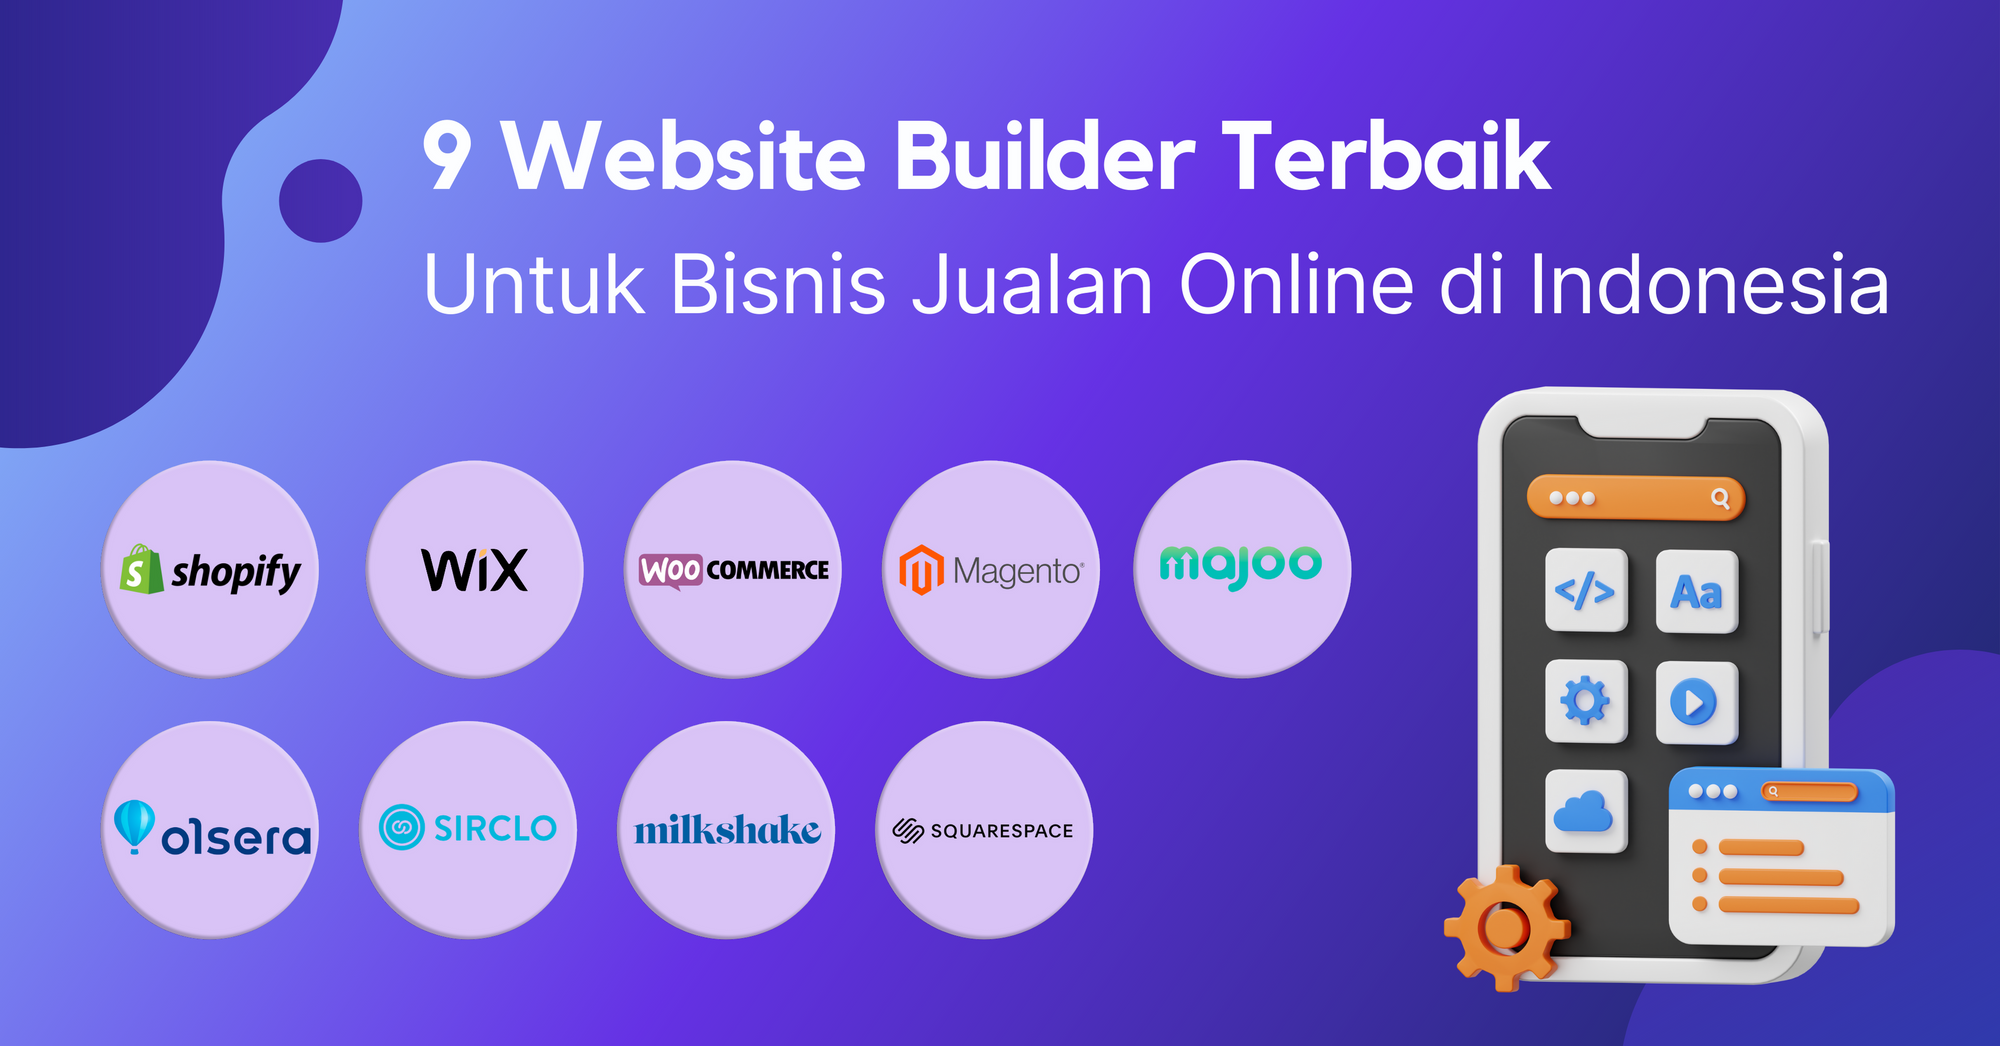 9 Website Builder Terbaik Untuk Bisnis Jualan Online di Indonesia